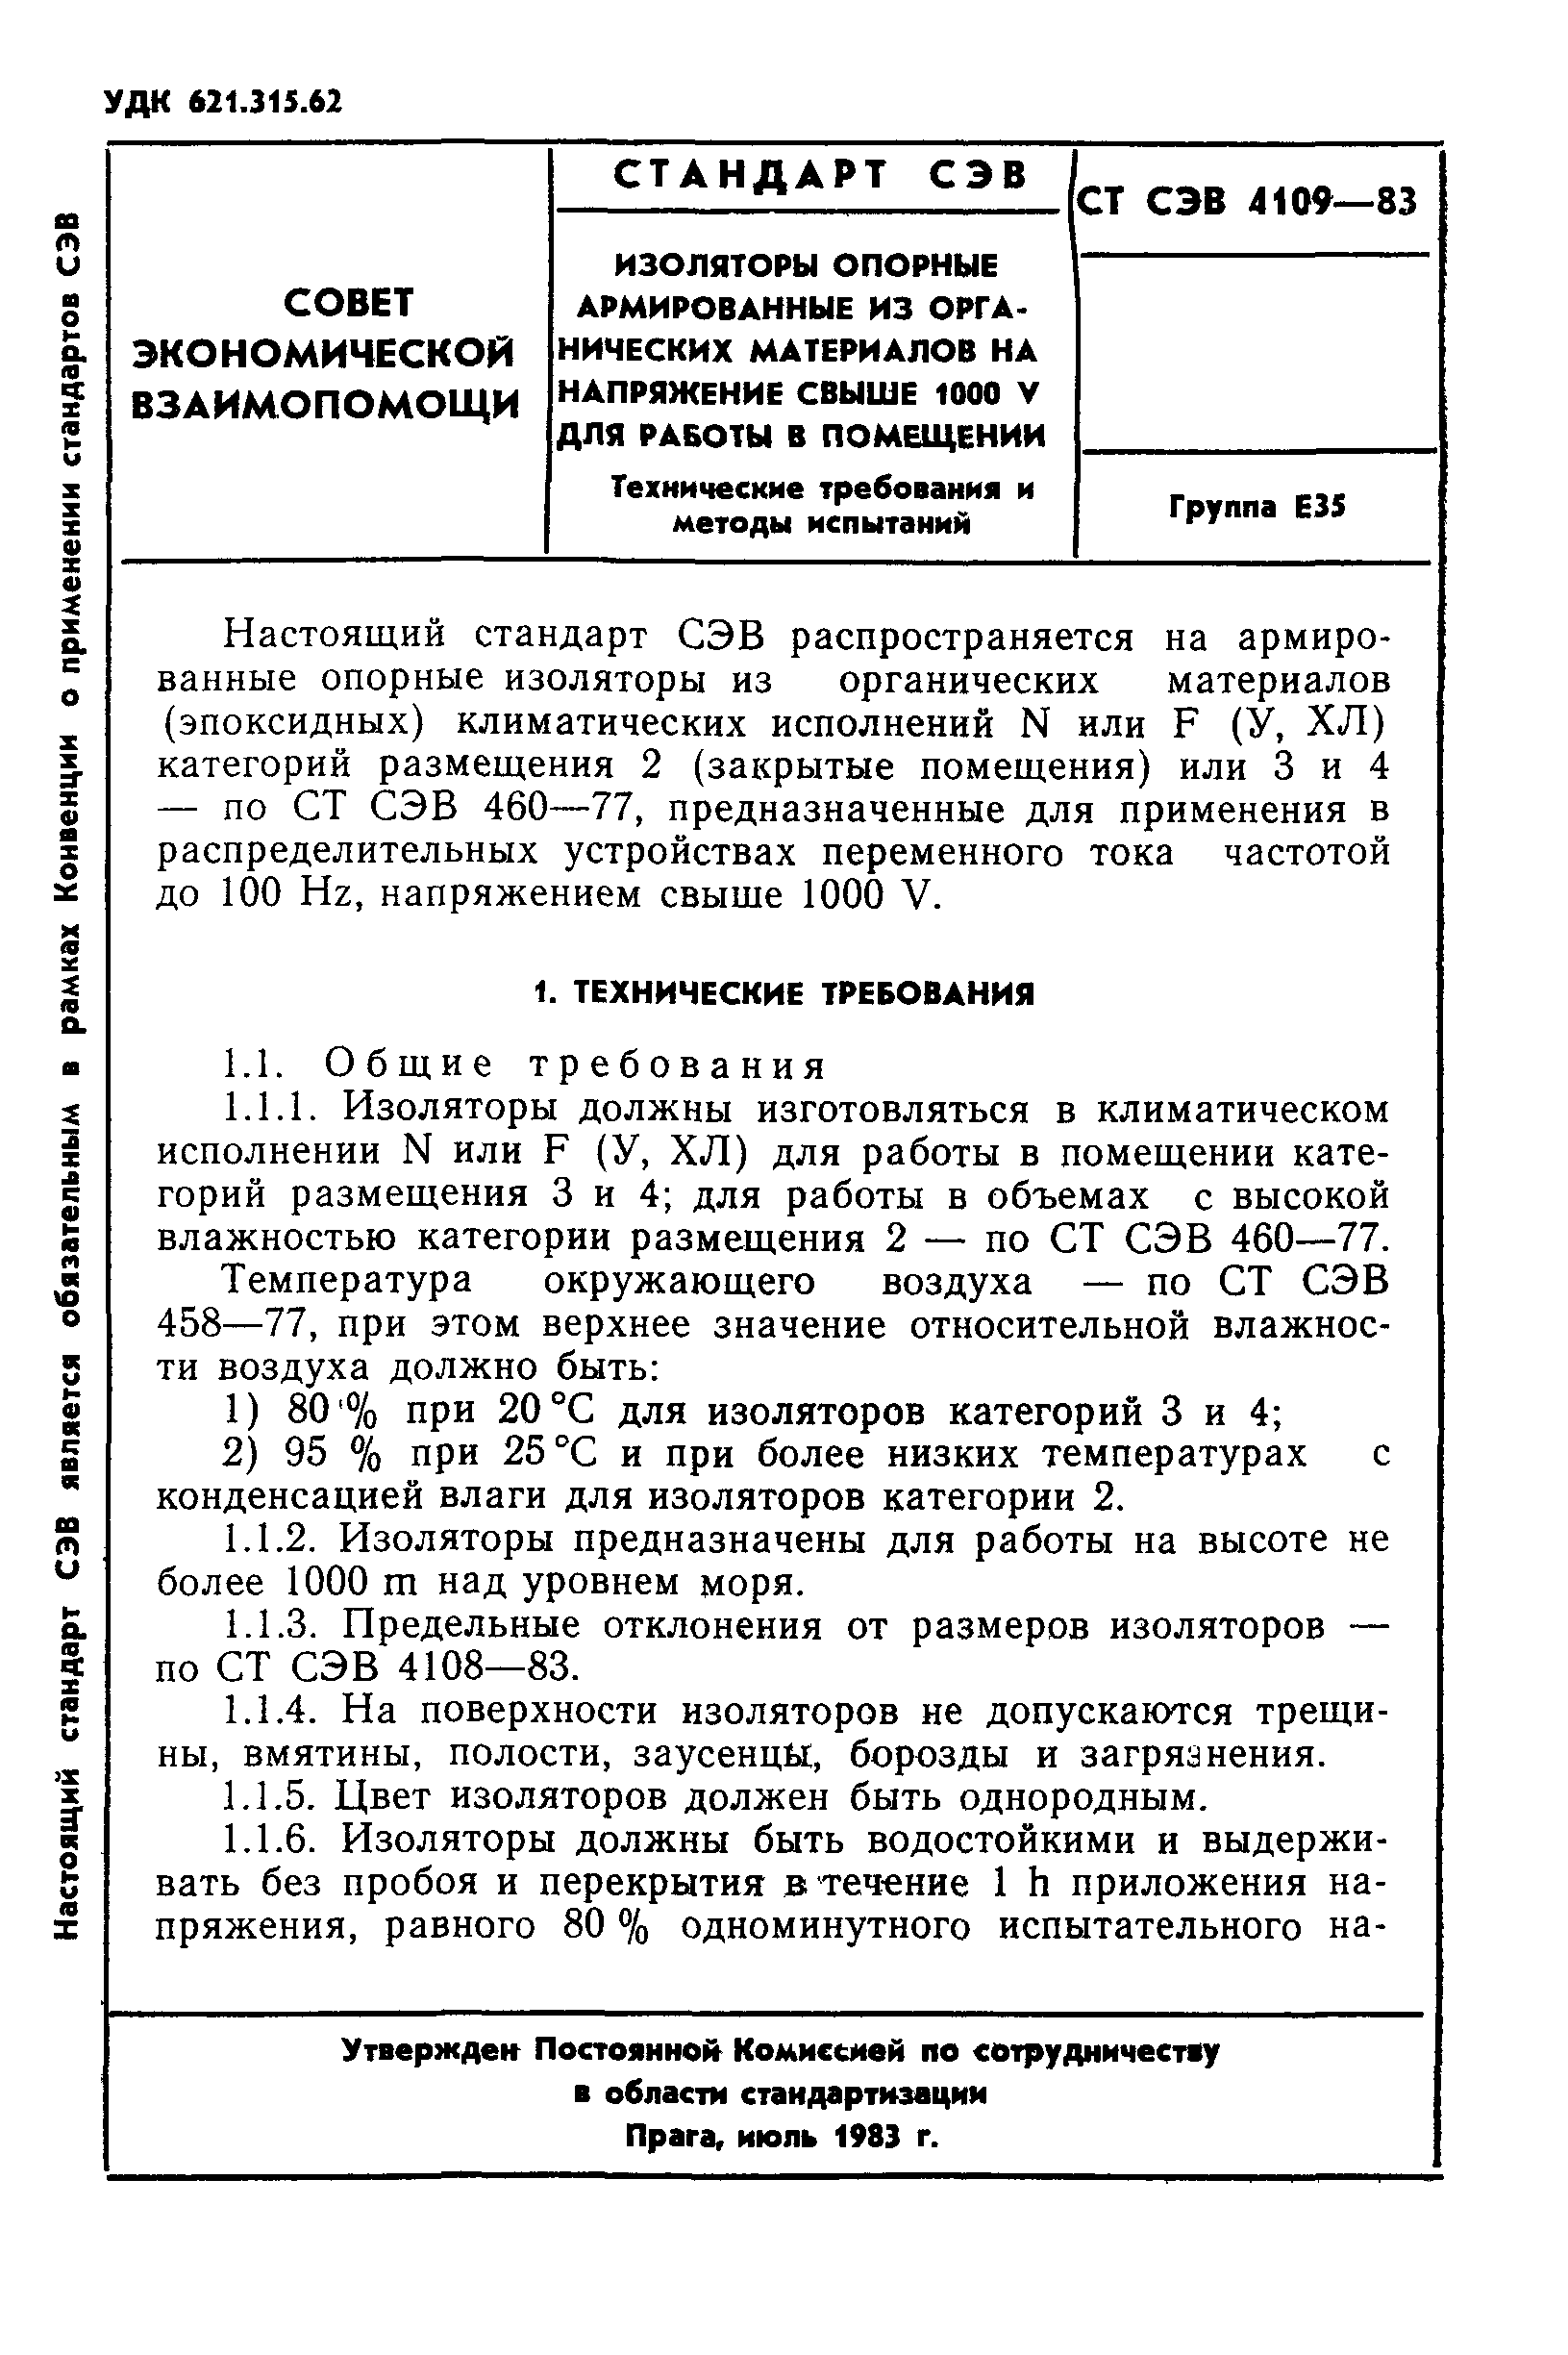 СТ СЭВ 4109-83